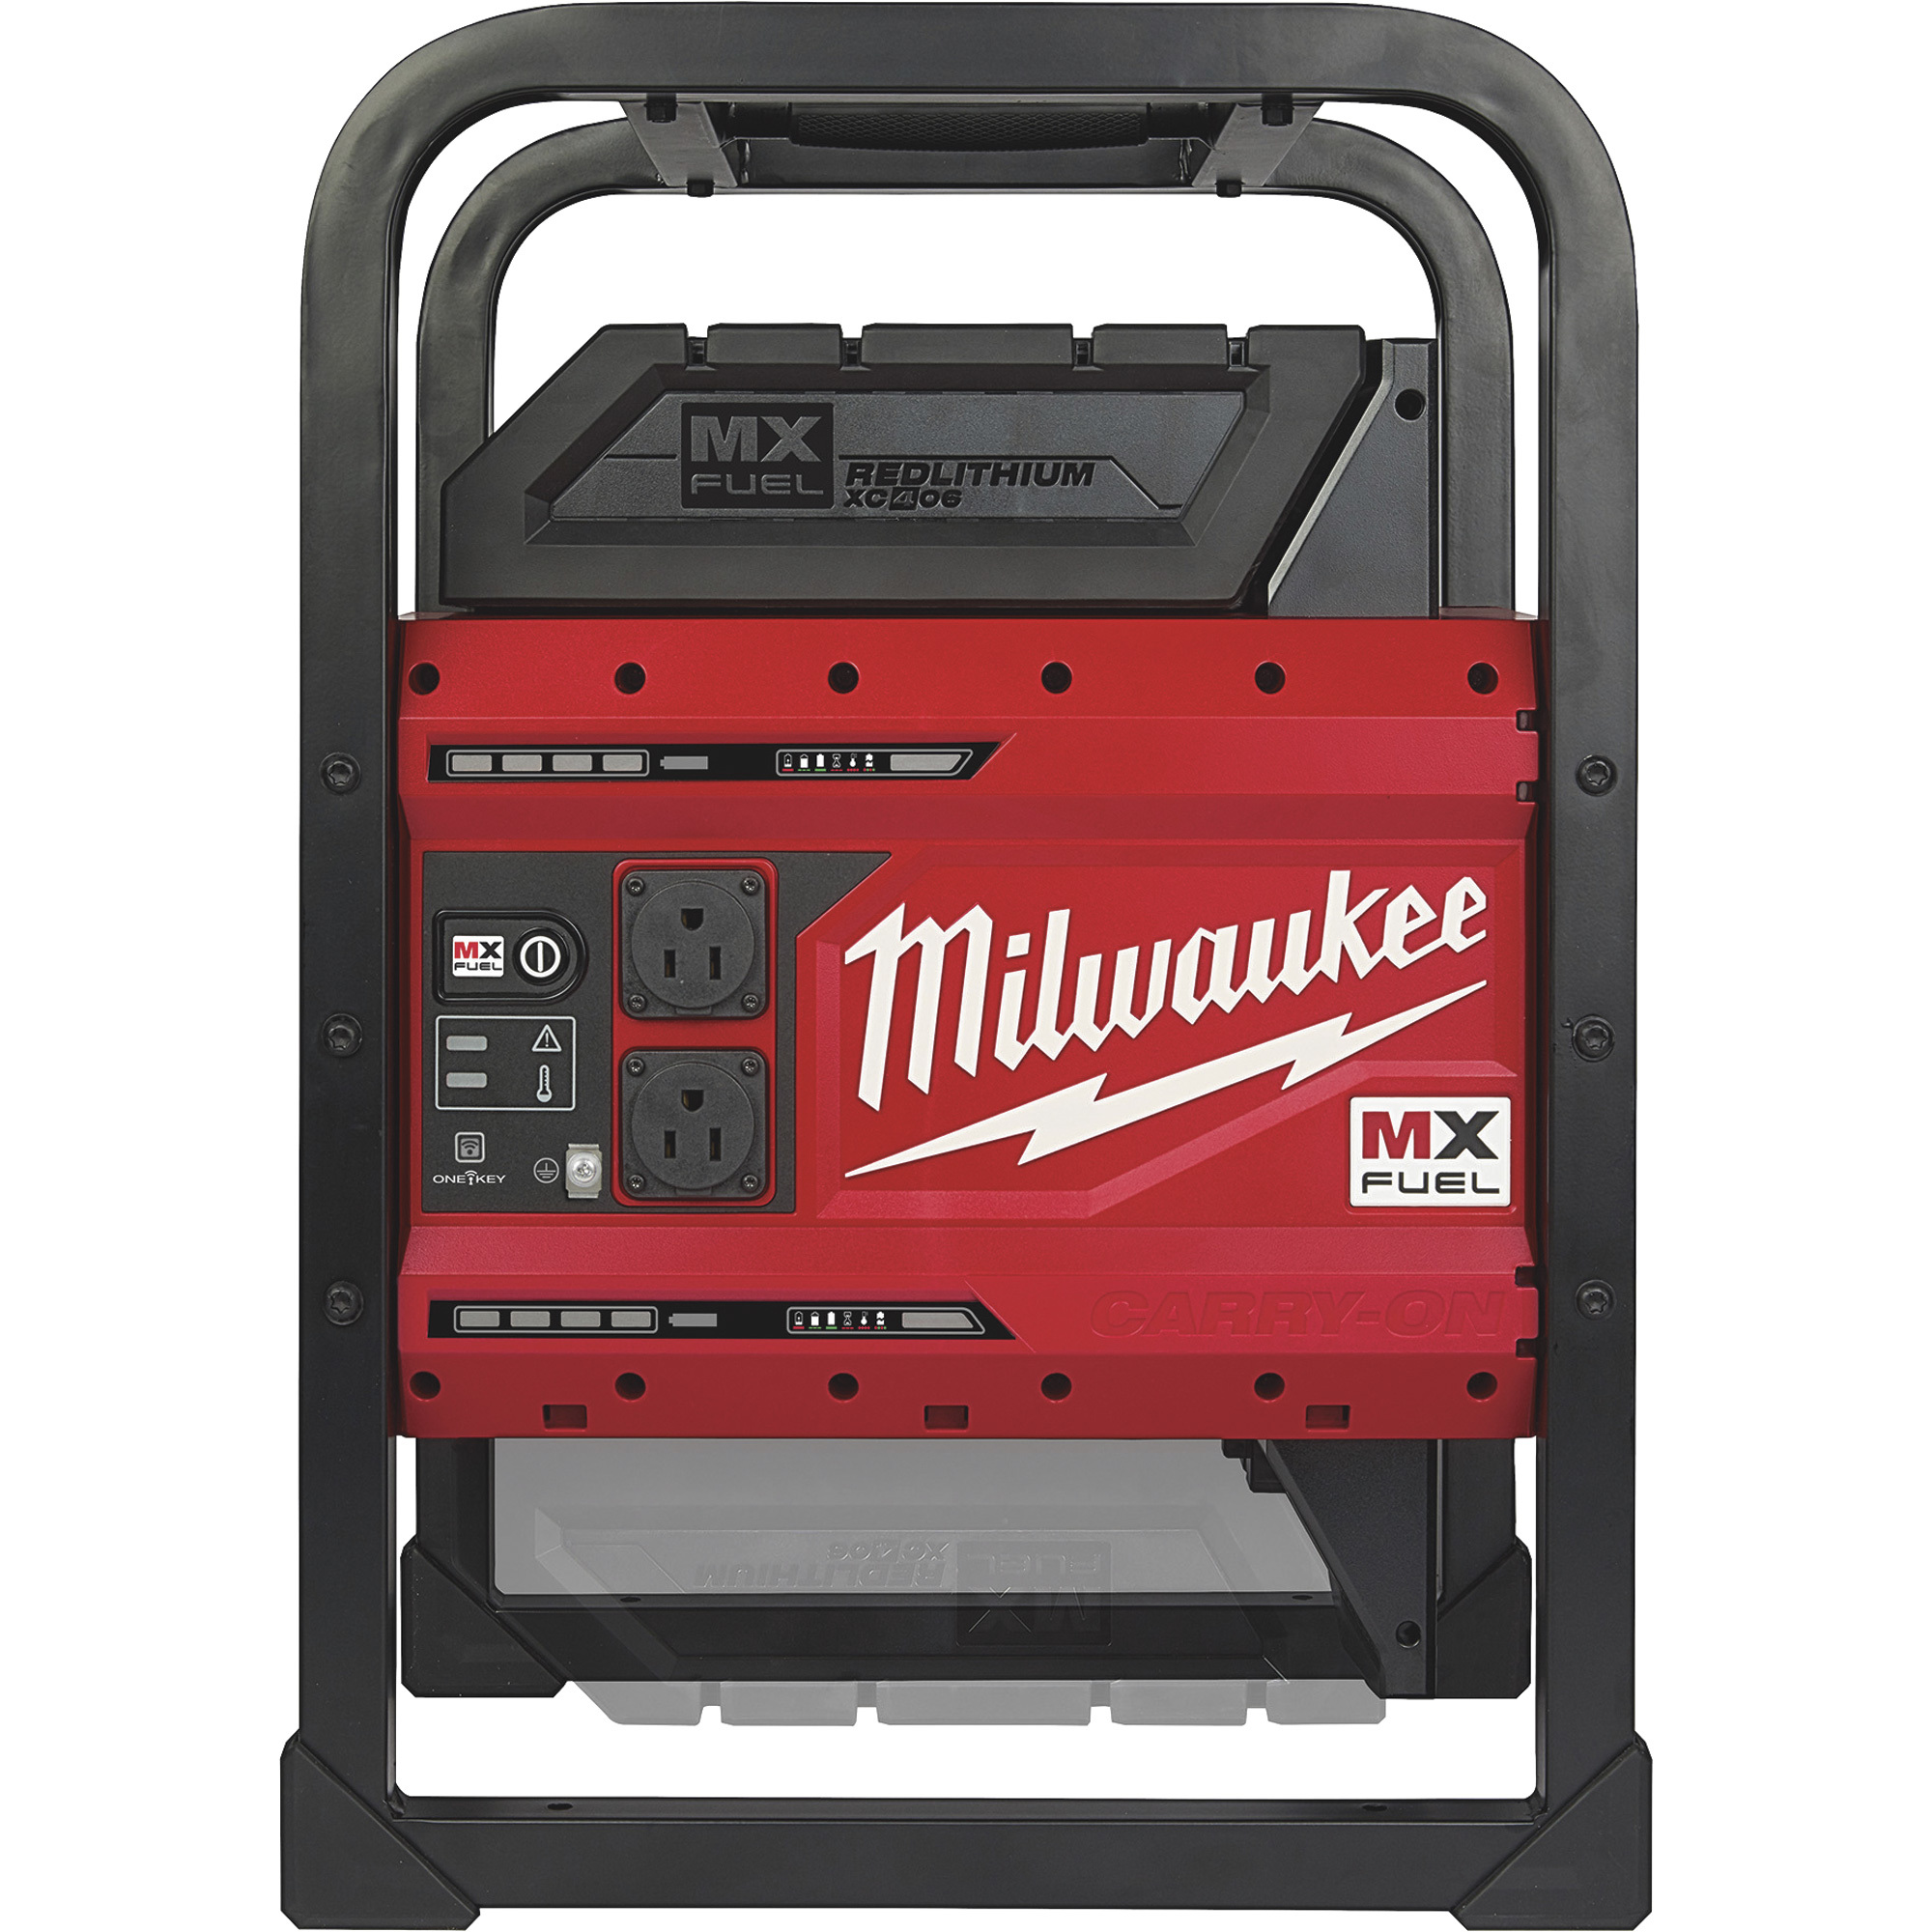 Milwaukee MX FUEL Carry On Power Supply Kit 3600 Peak Watts, Pure Sine Wave, 2 Batteries